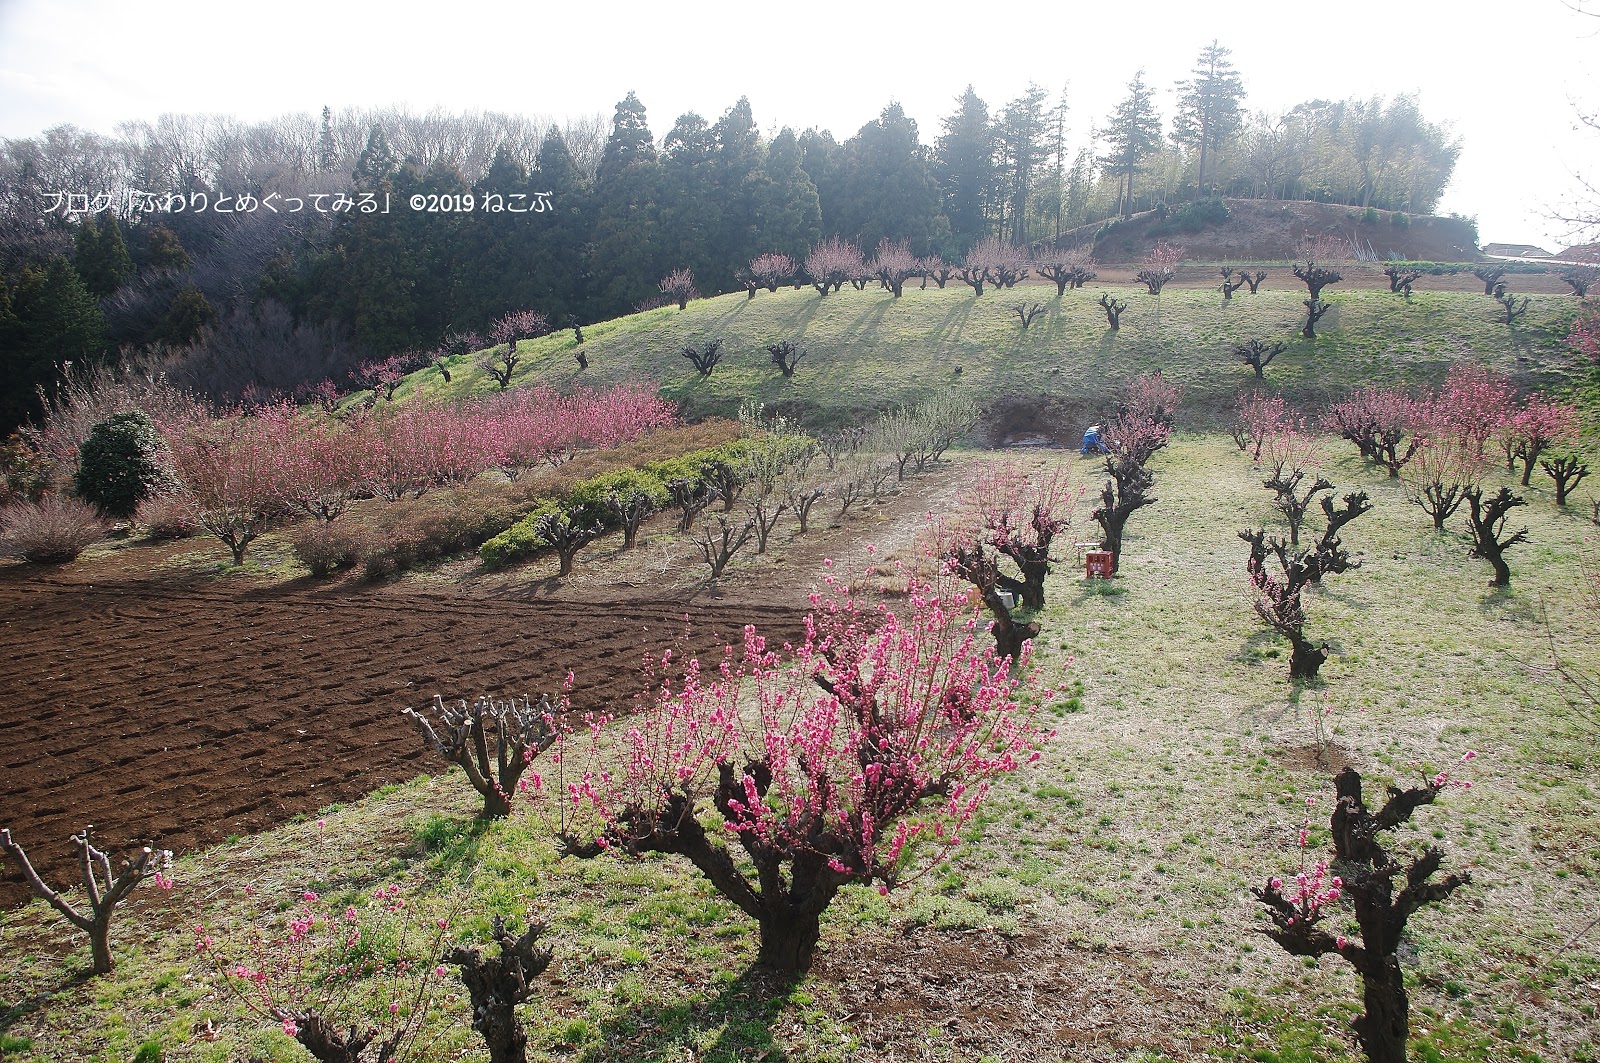 ふわりとめぐってみる 花桃の丘 横浜市青葉区にある桃の花の名所へ行ってきました 19年3月12日時点